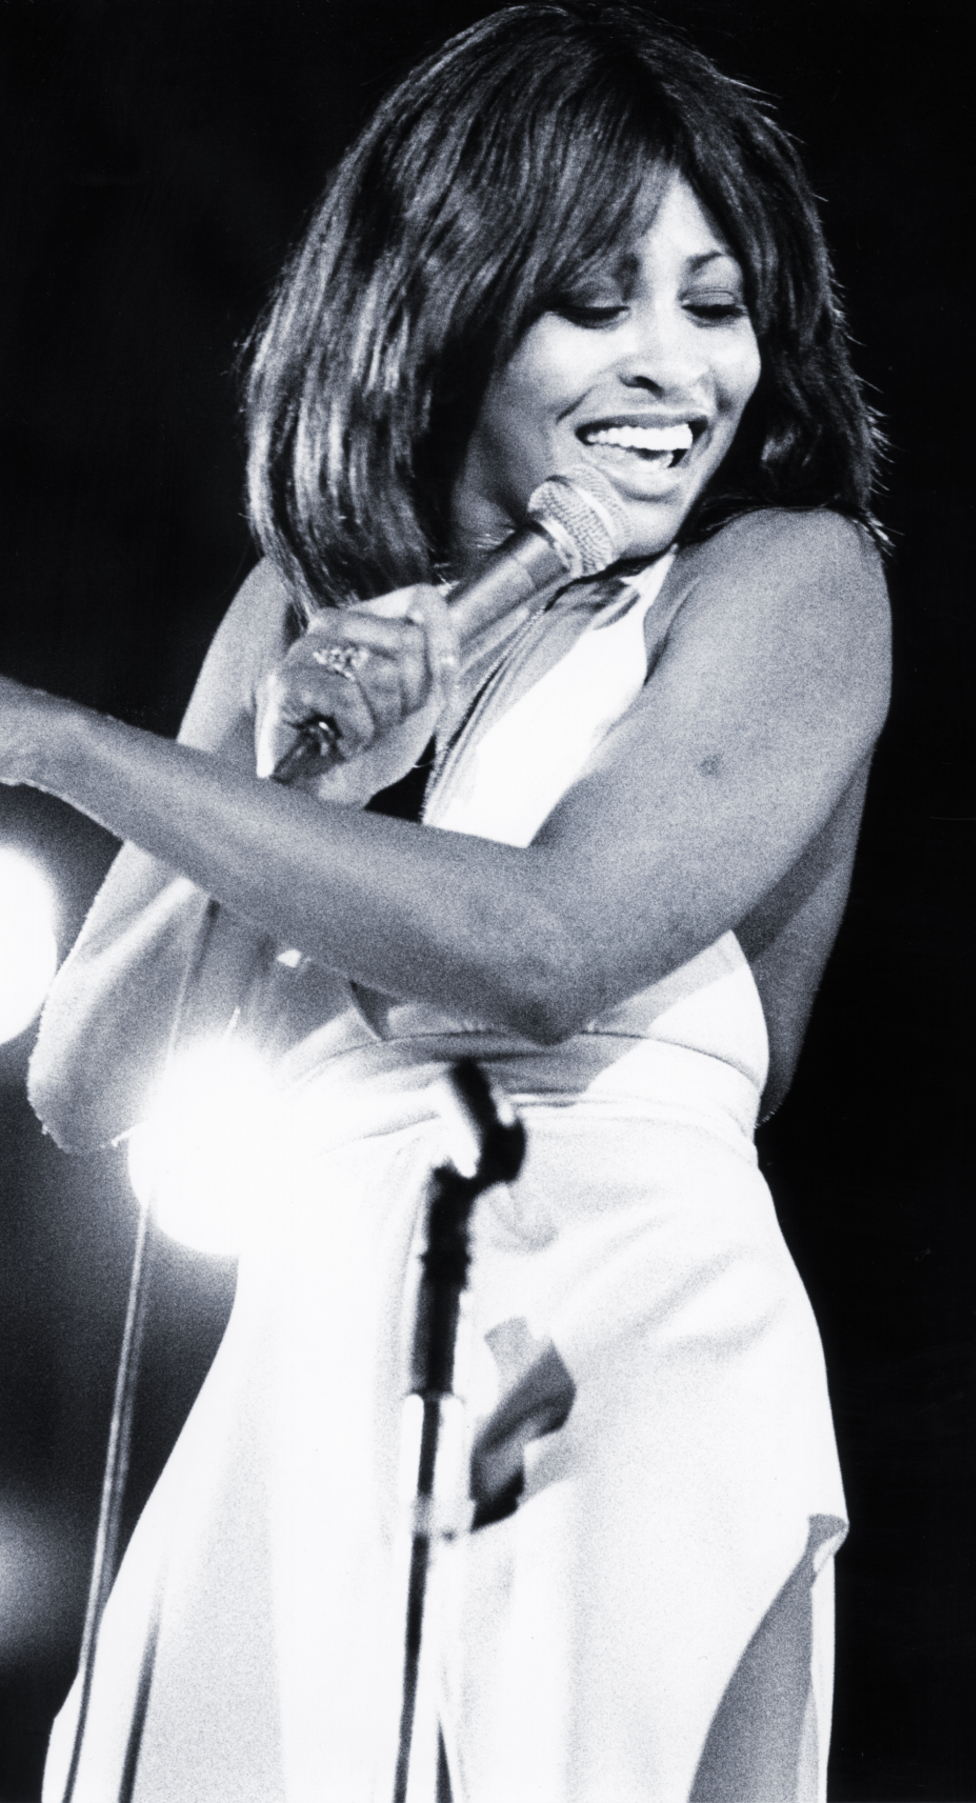 Turner sobre el escenario en 1975